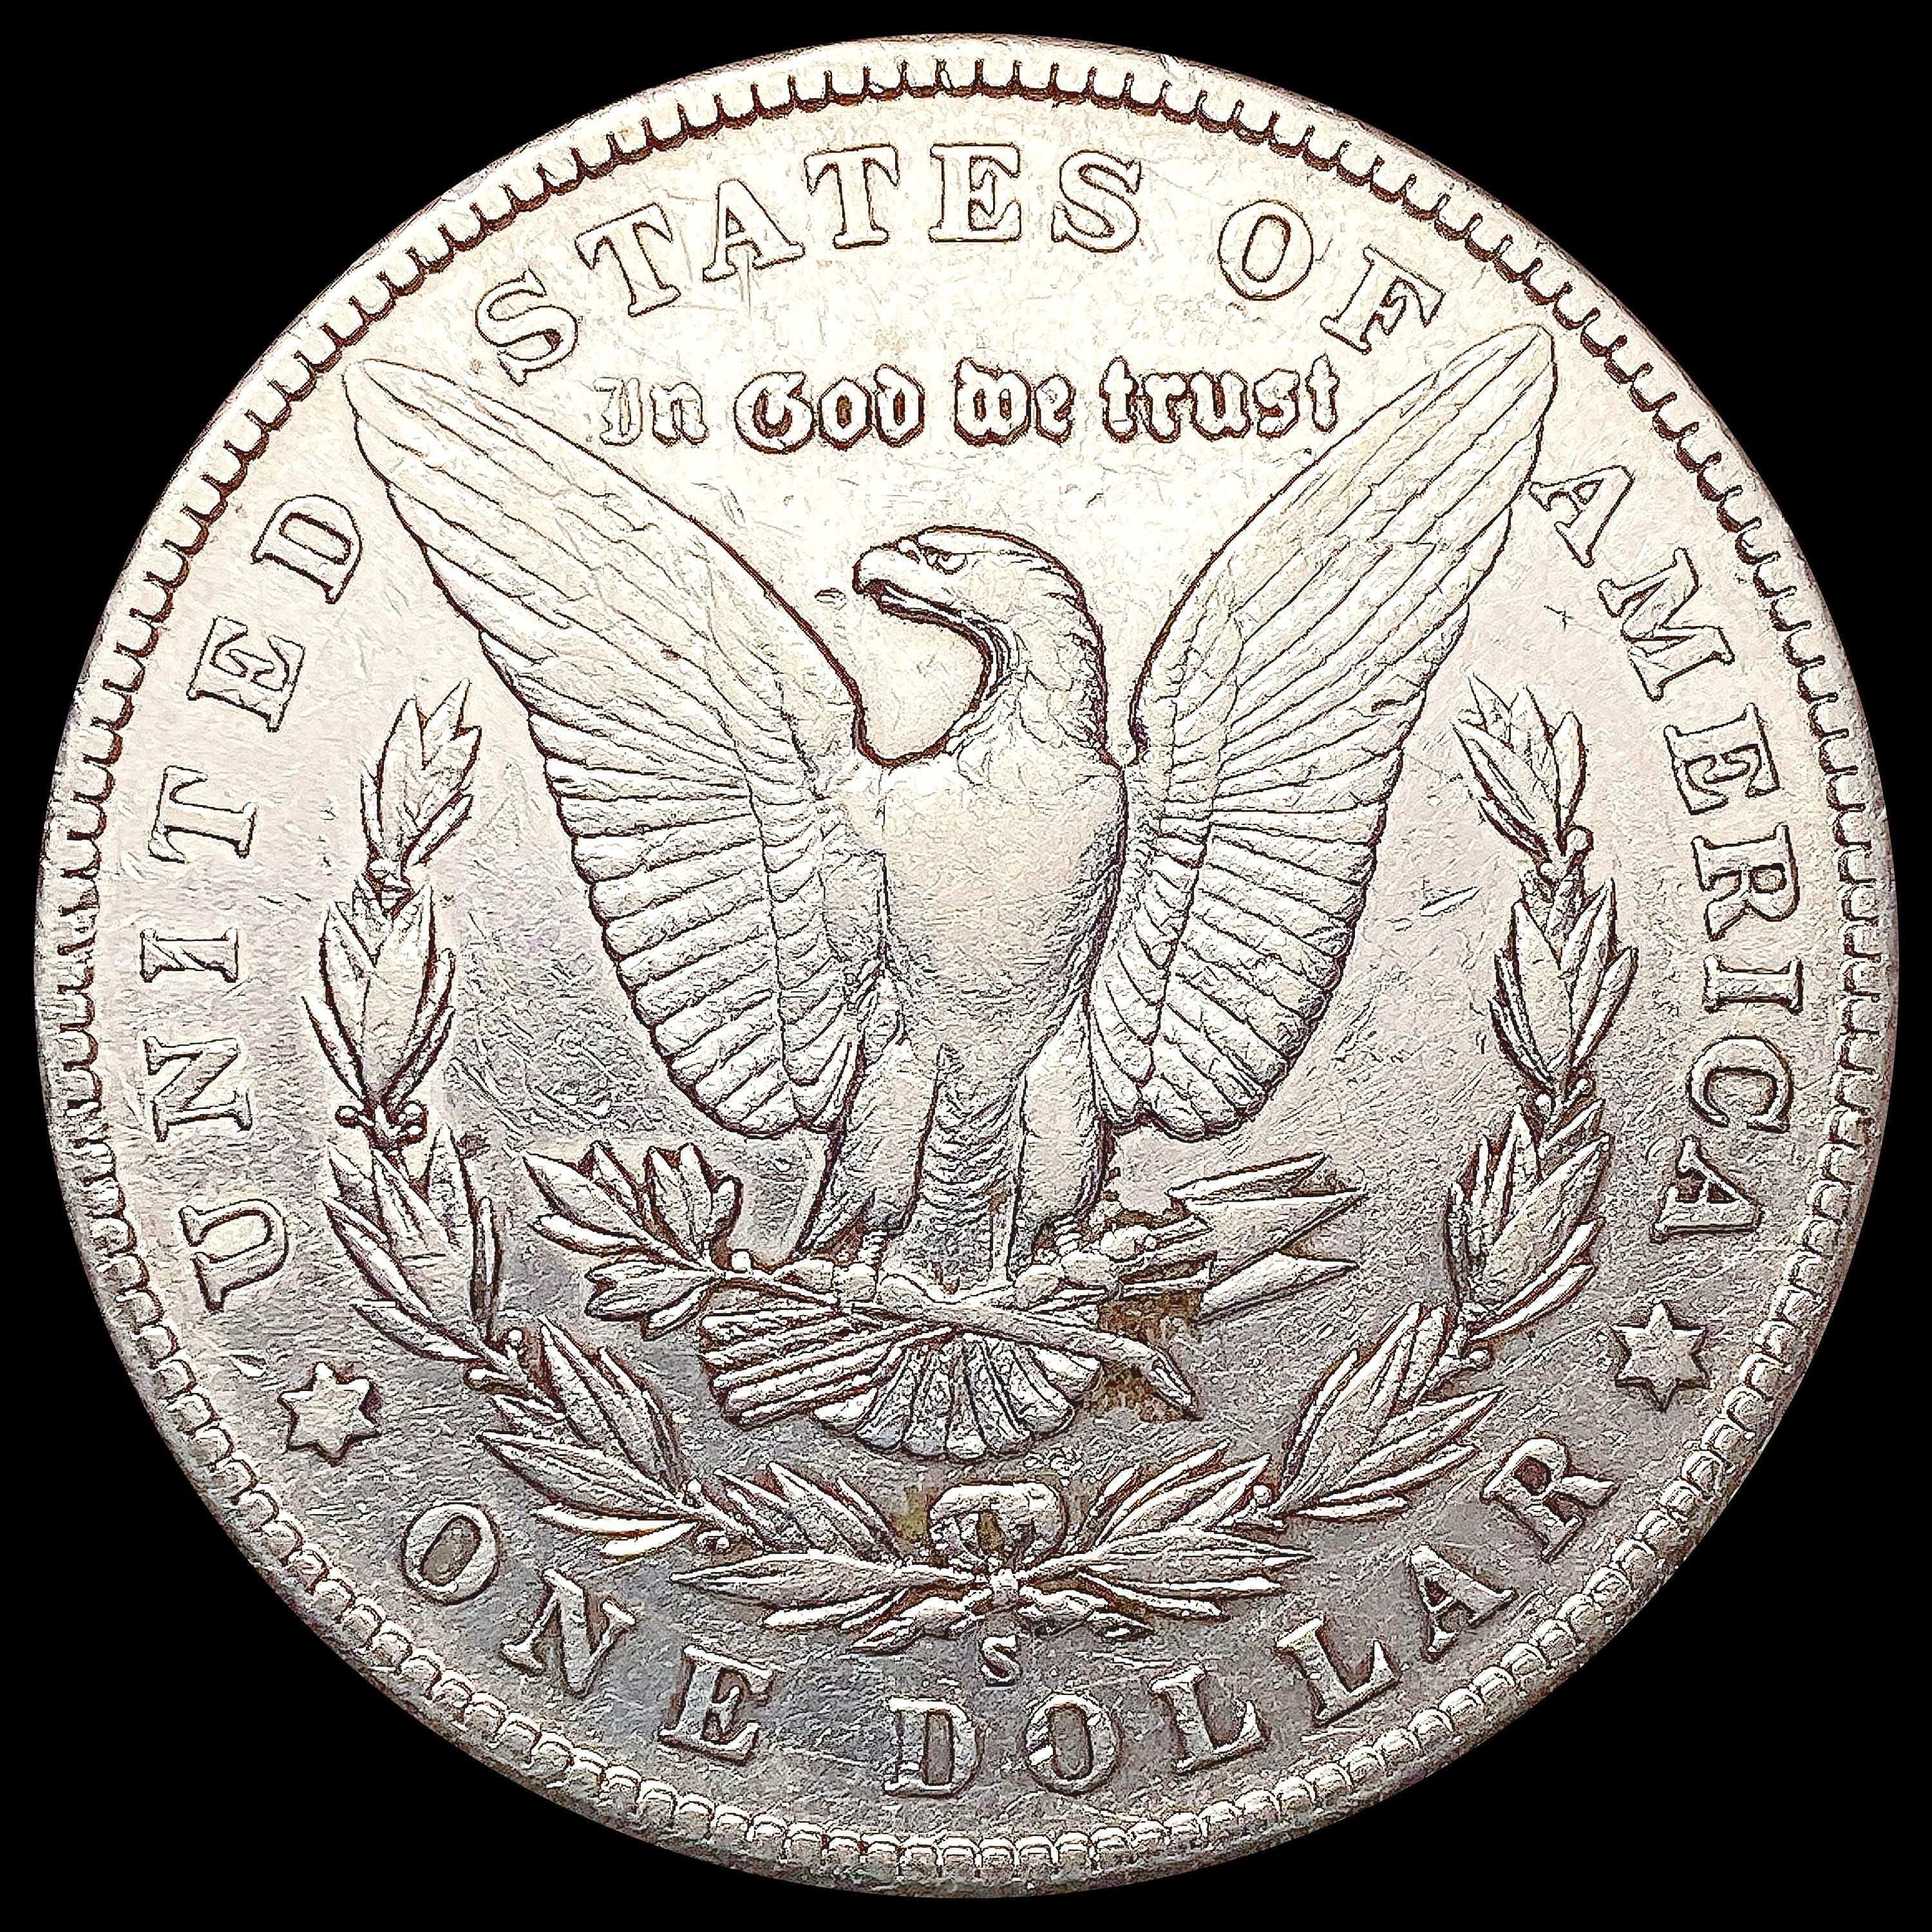 1904-S Morgan Silver Dollar HIGH GRADE